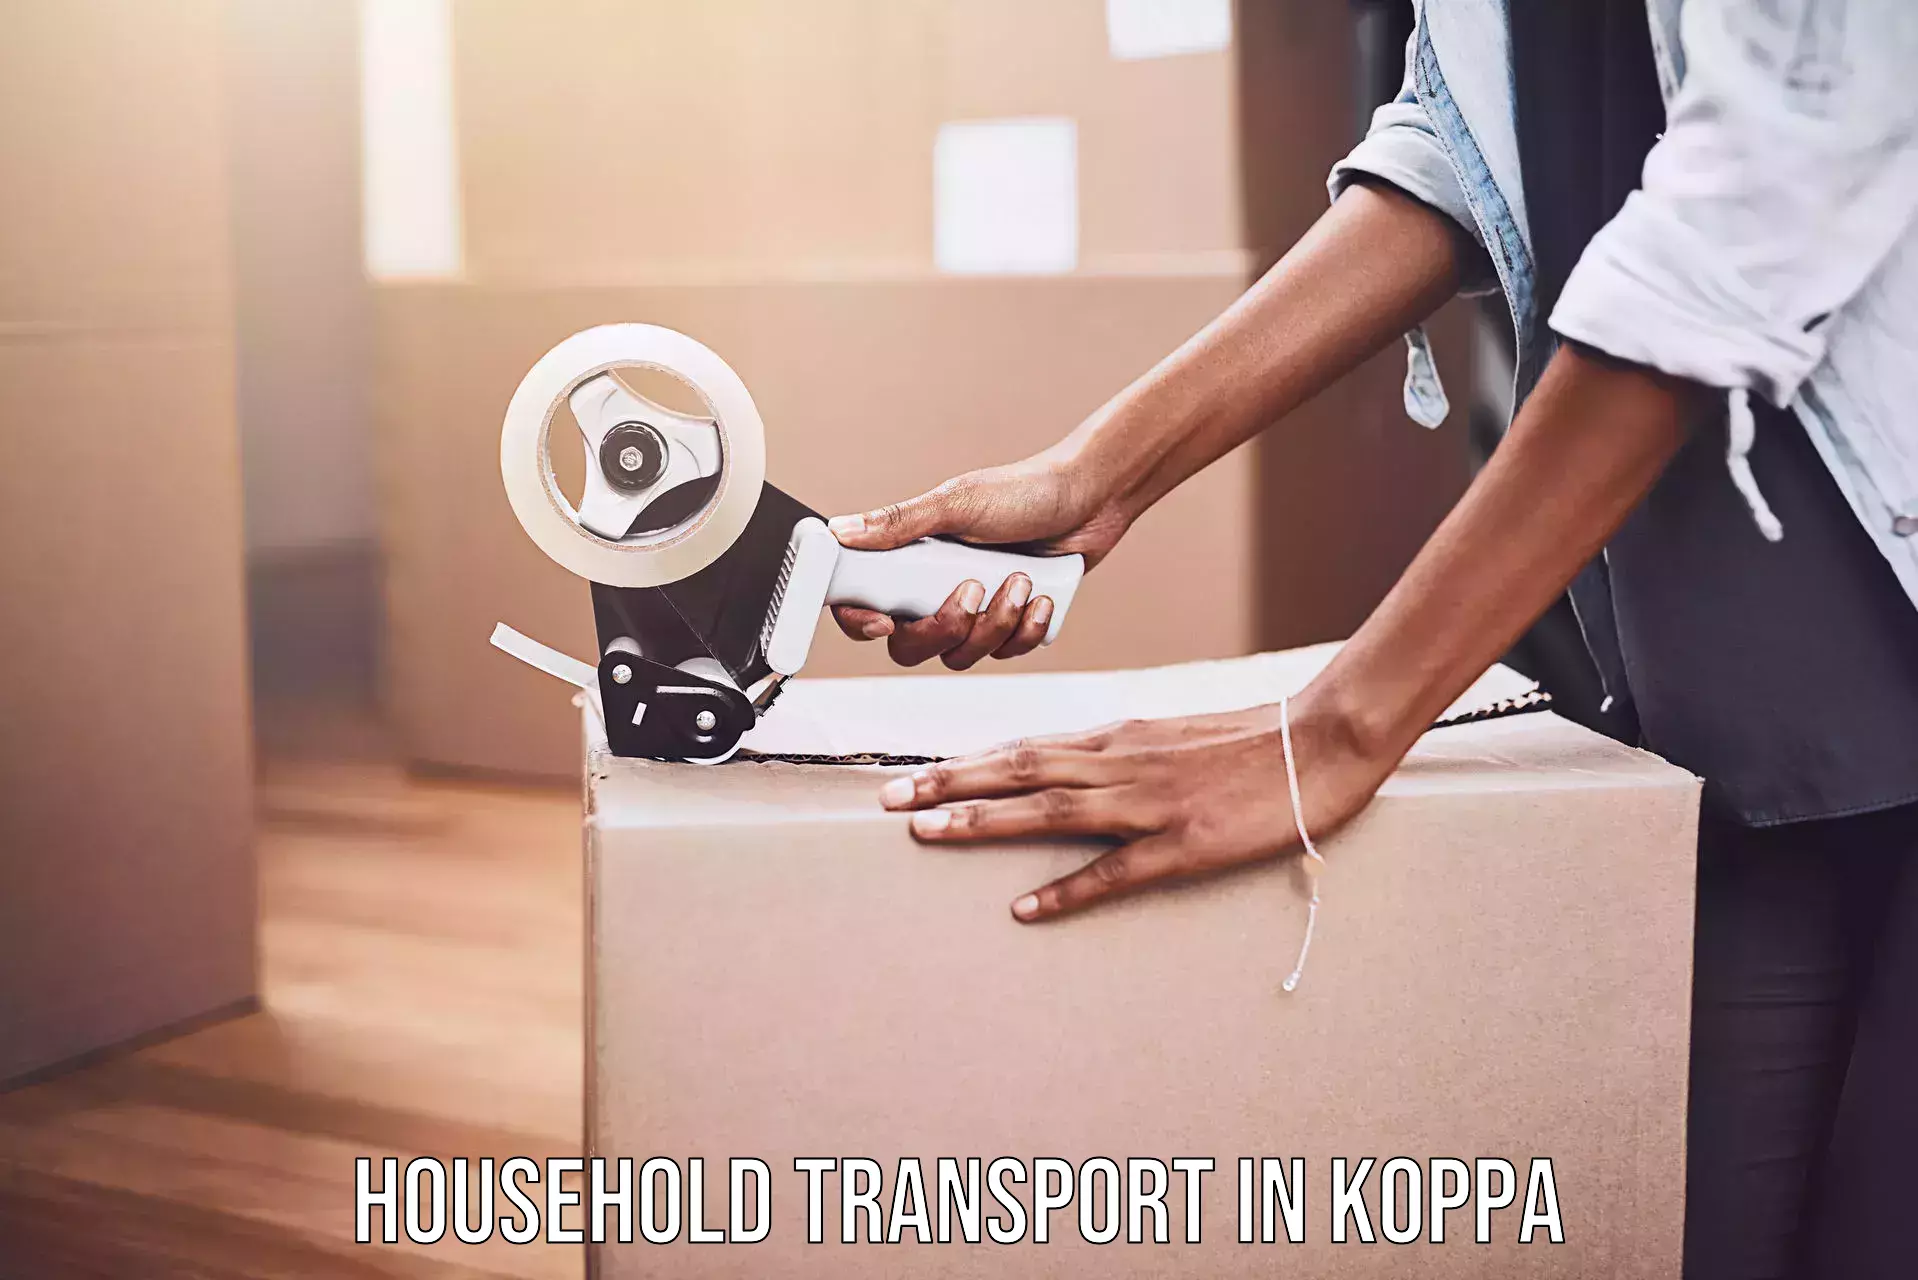 Long-distance household transport in Koppa